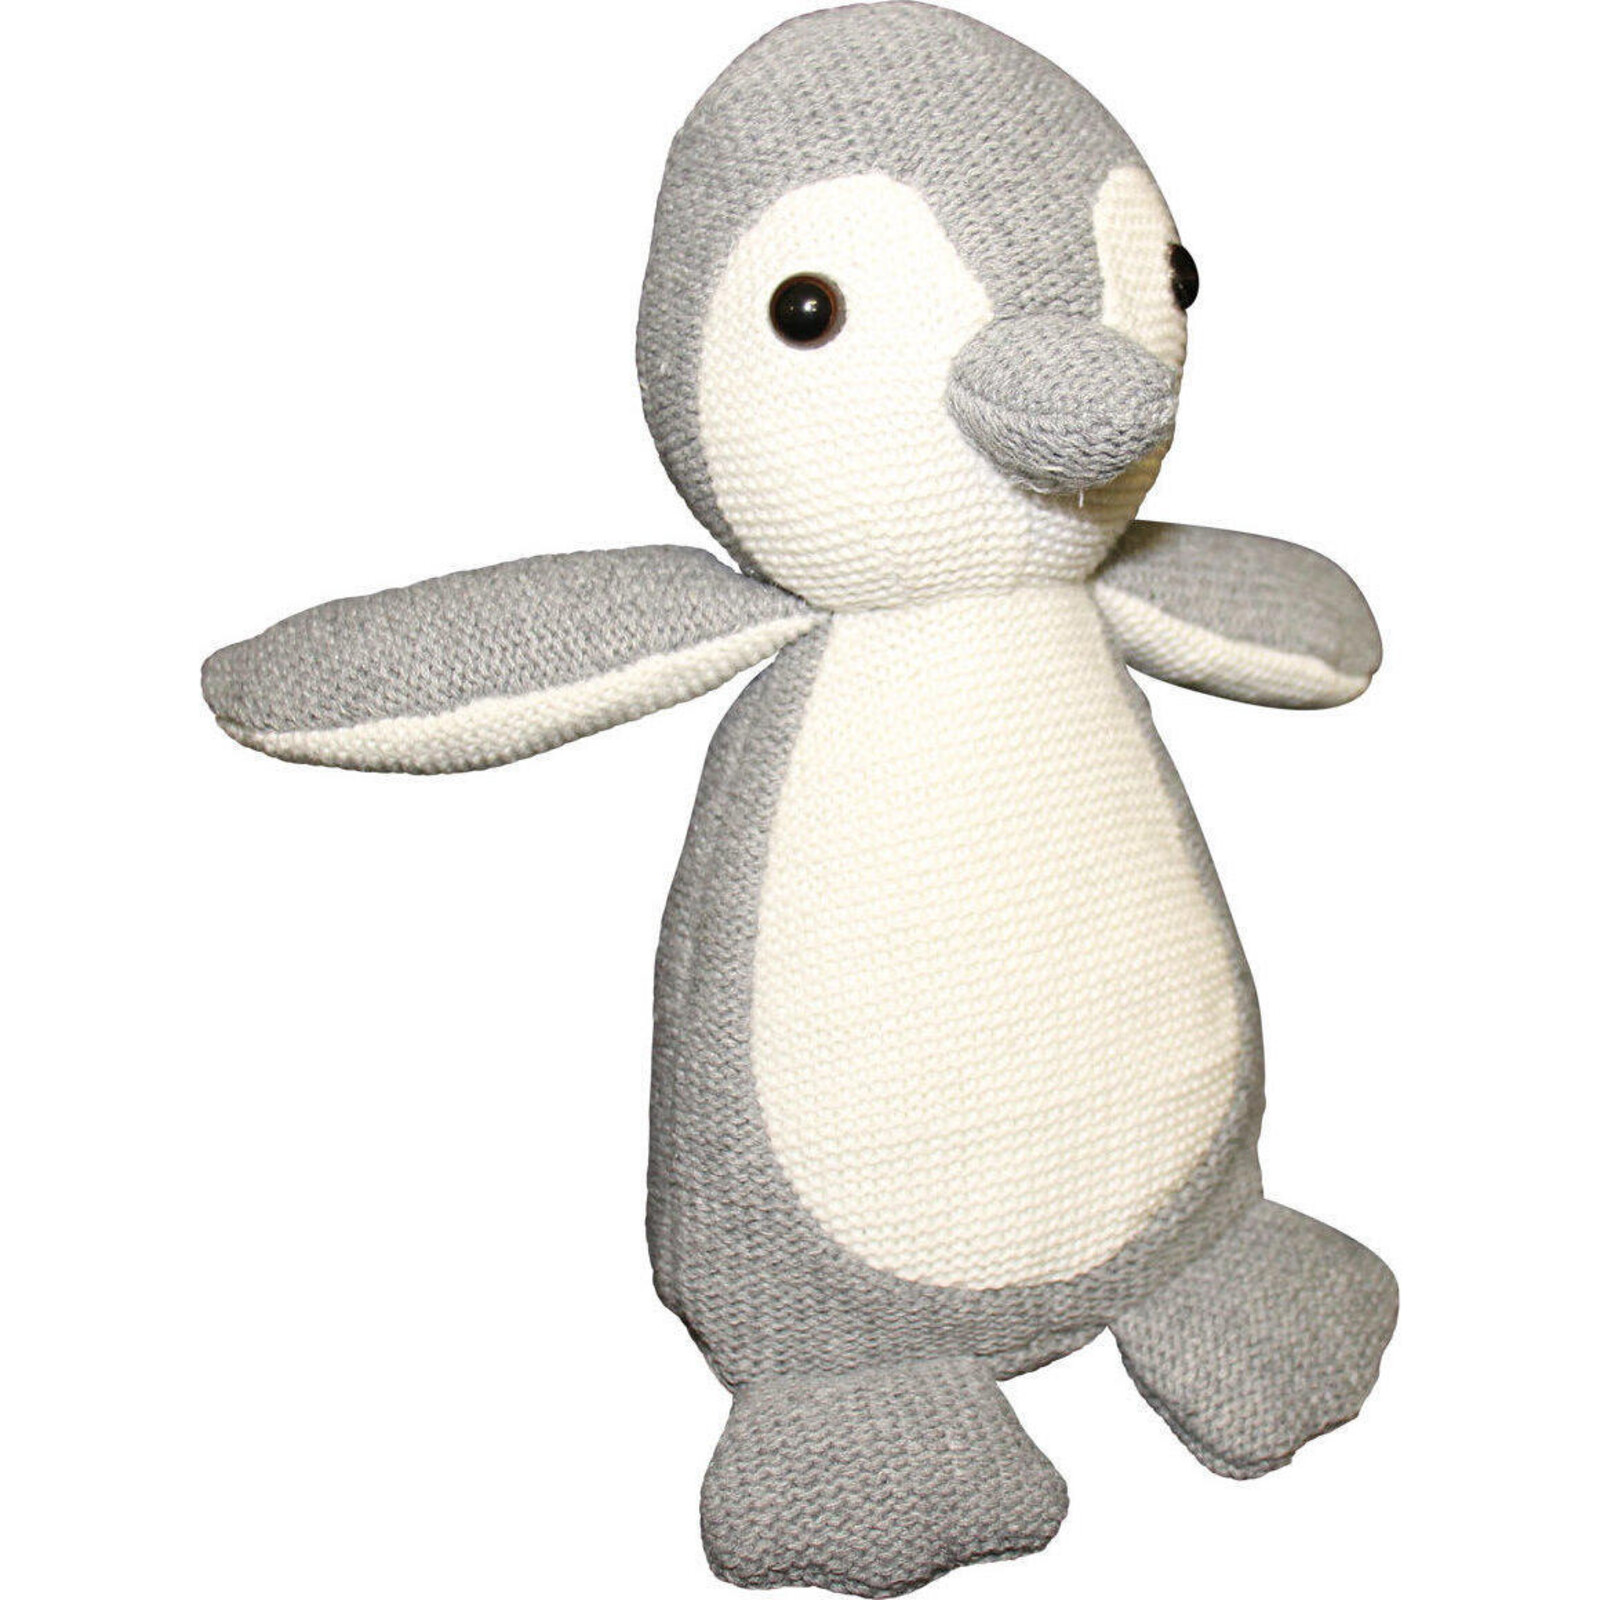 Plush Knitted Penguin Lrg